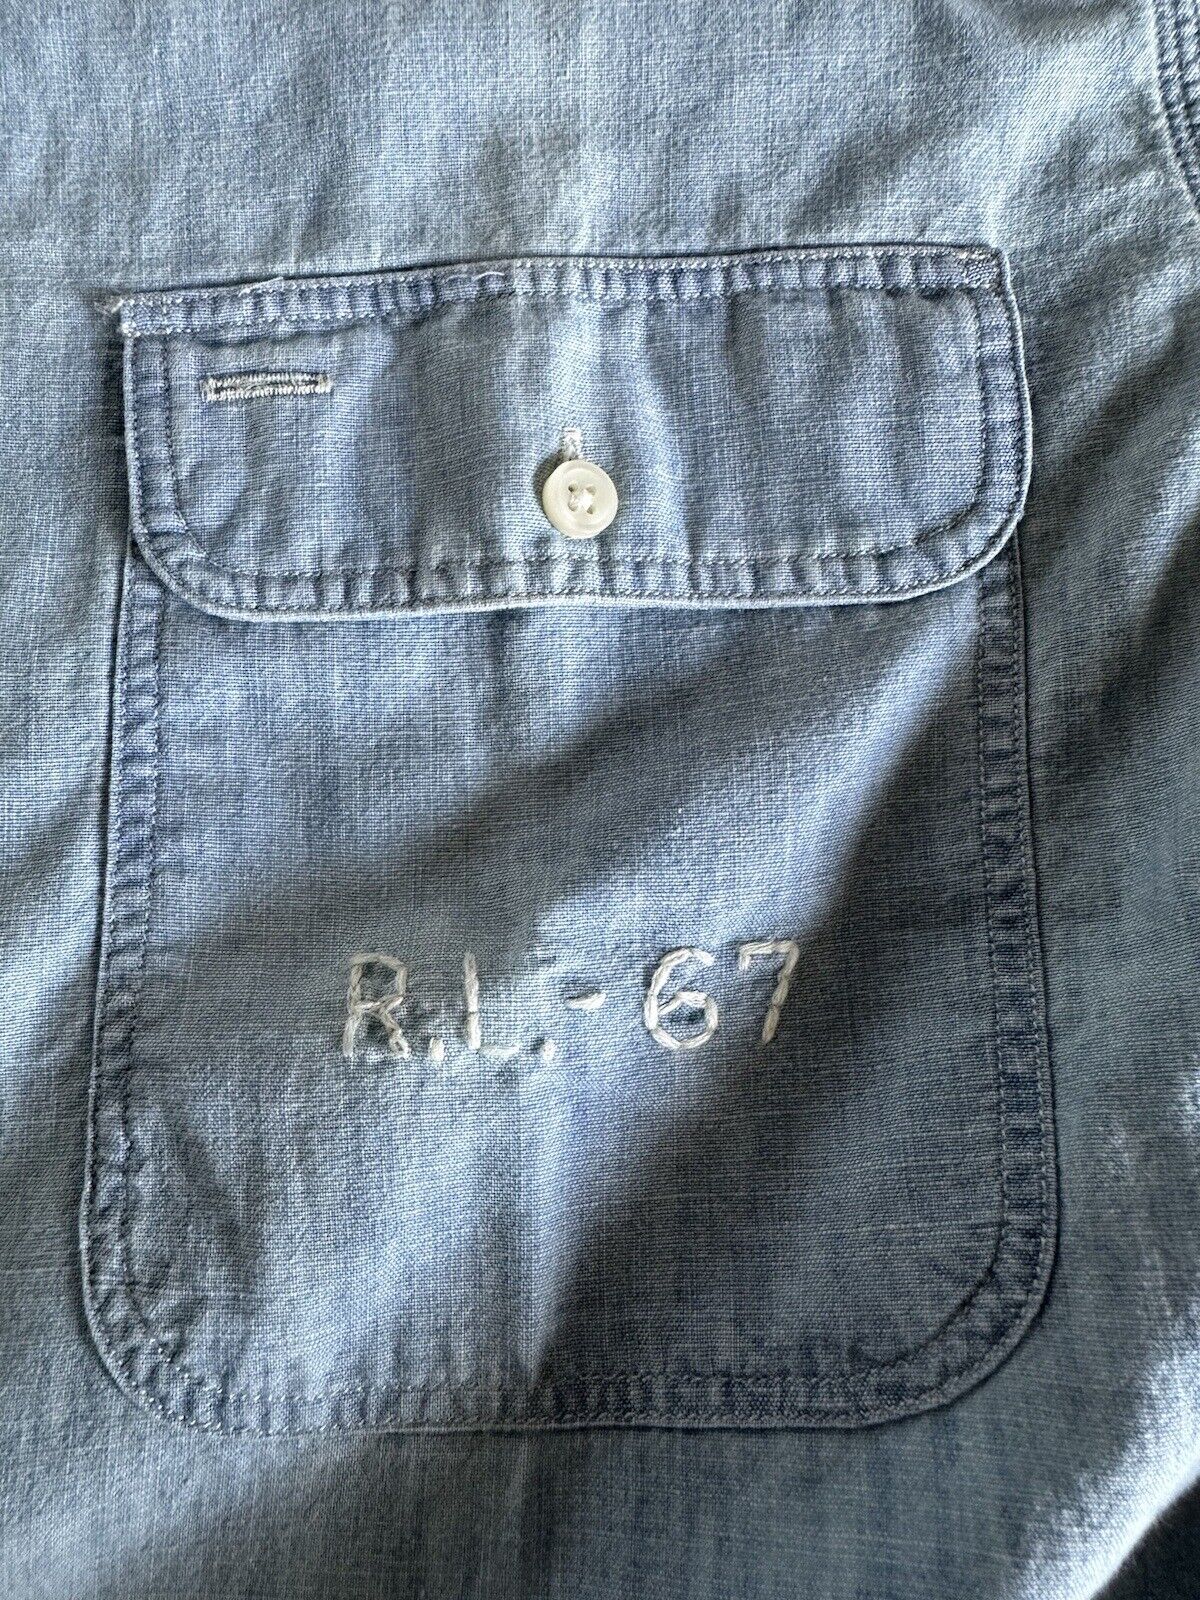 Neu mit Etikett: 148 $ Polo Ralph Lauren Herren-Button-Down-Baumwollhemd in Blau, Größe L